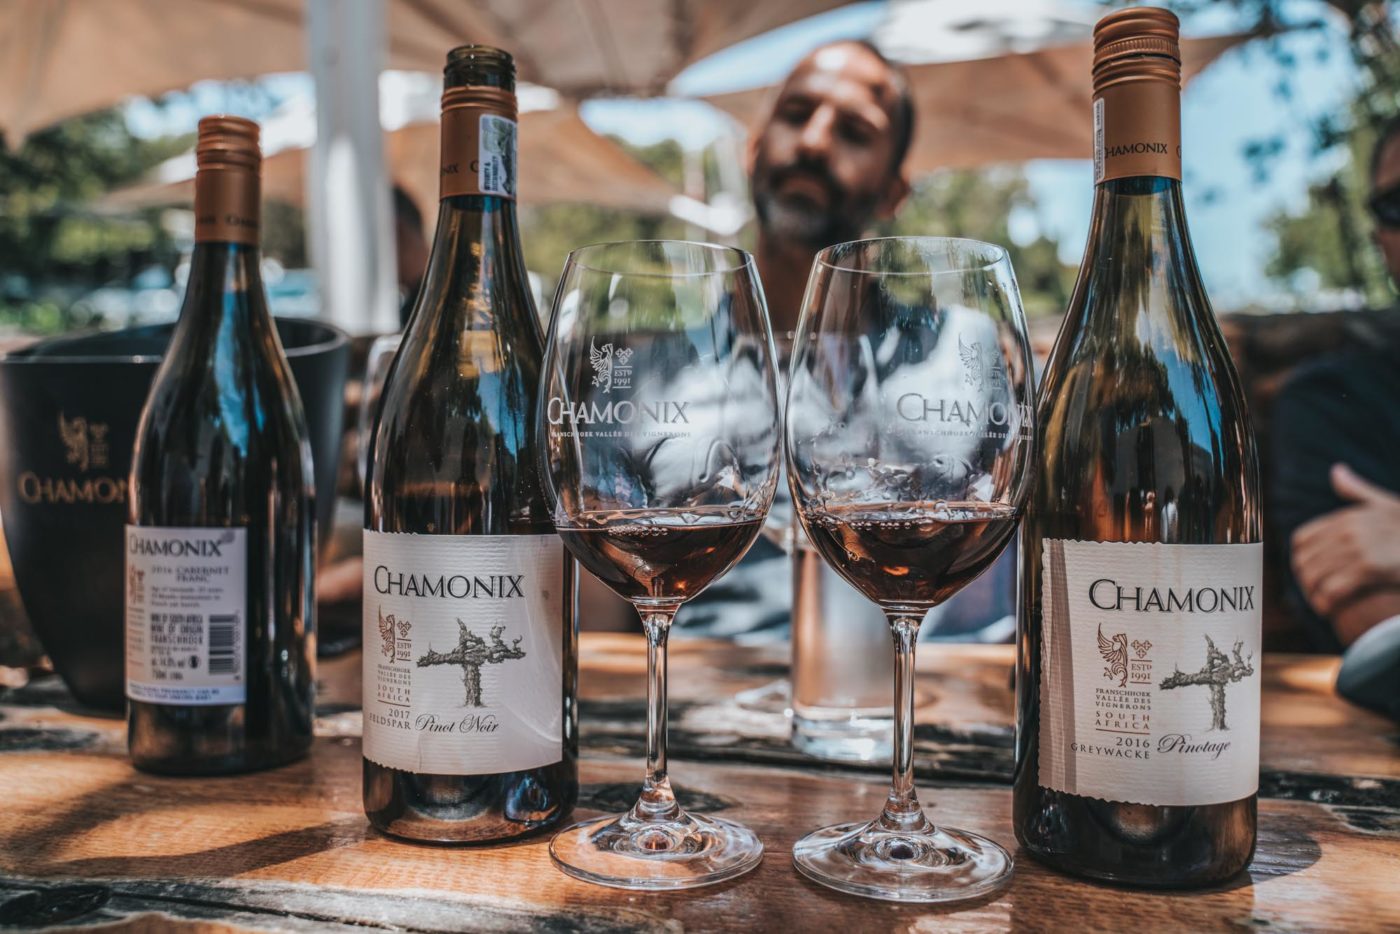 South Africa Stellenbosch Chamonix wine 03047